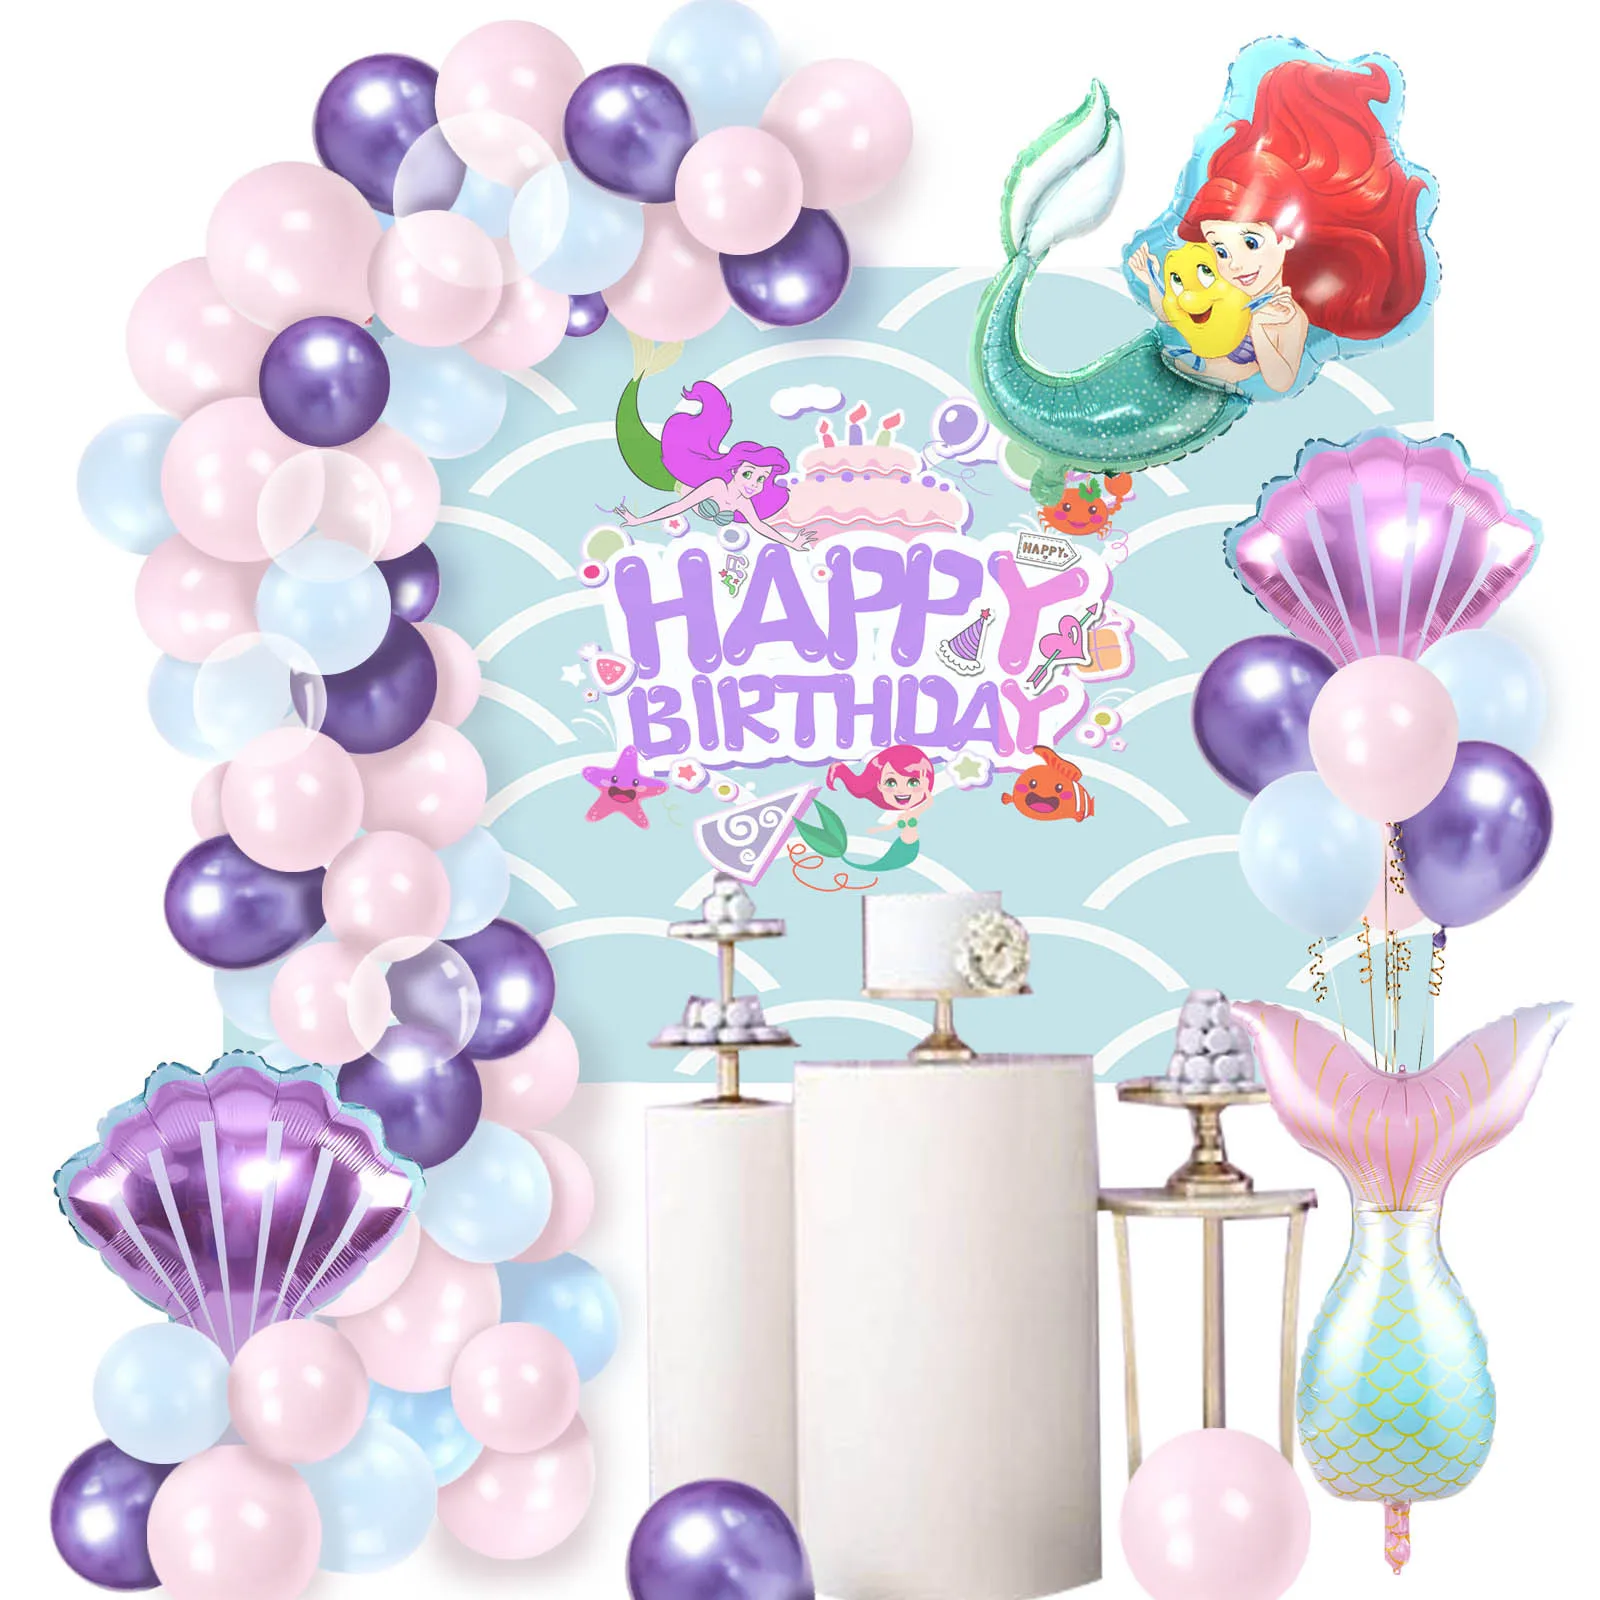 

Воздушные шары в стиле русалки SURSURPIRSE, украшения из фольги, розовые фиолетовые ракушки русалки, для девочек, товары для первого дня рождения